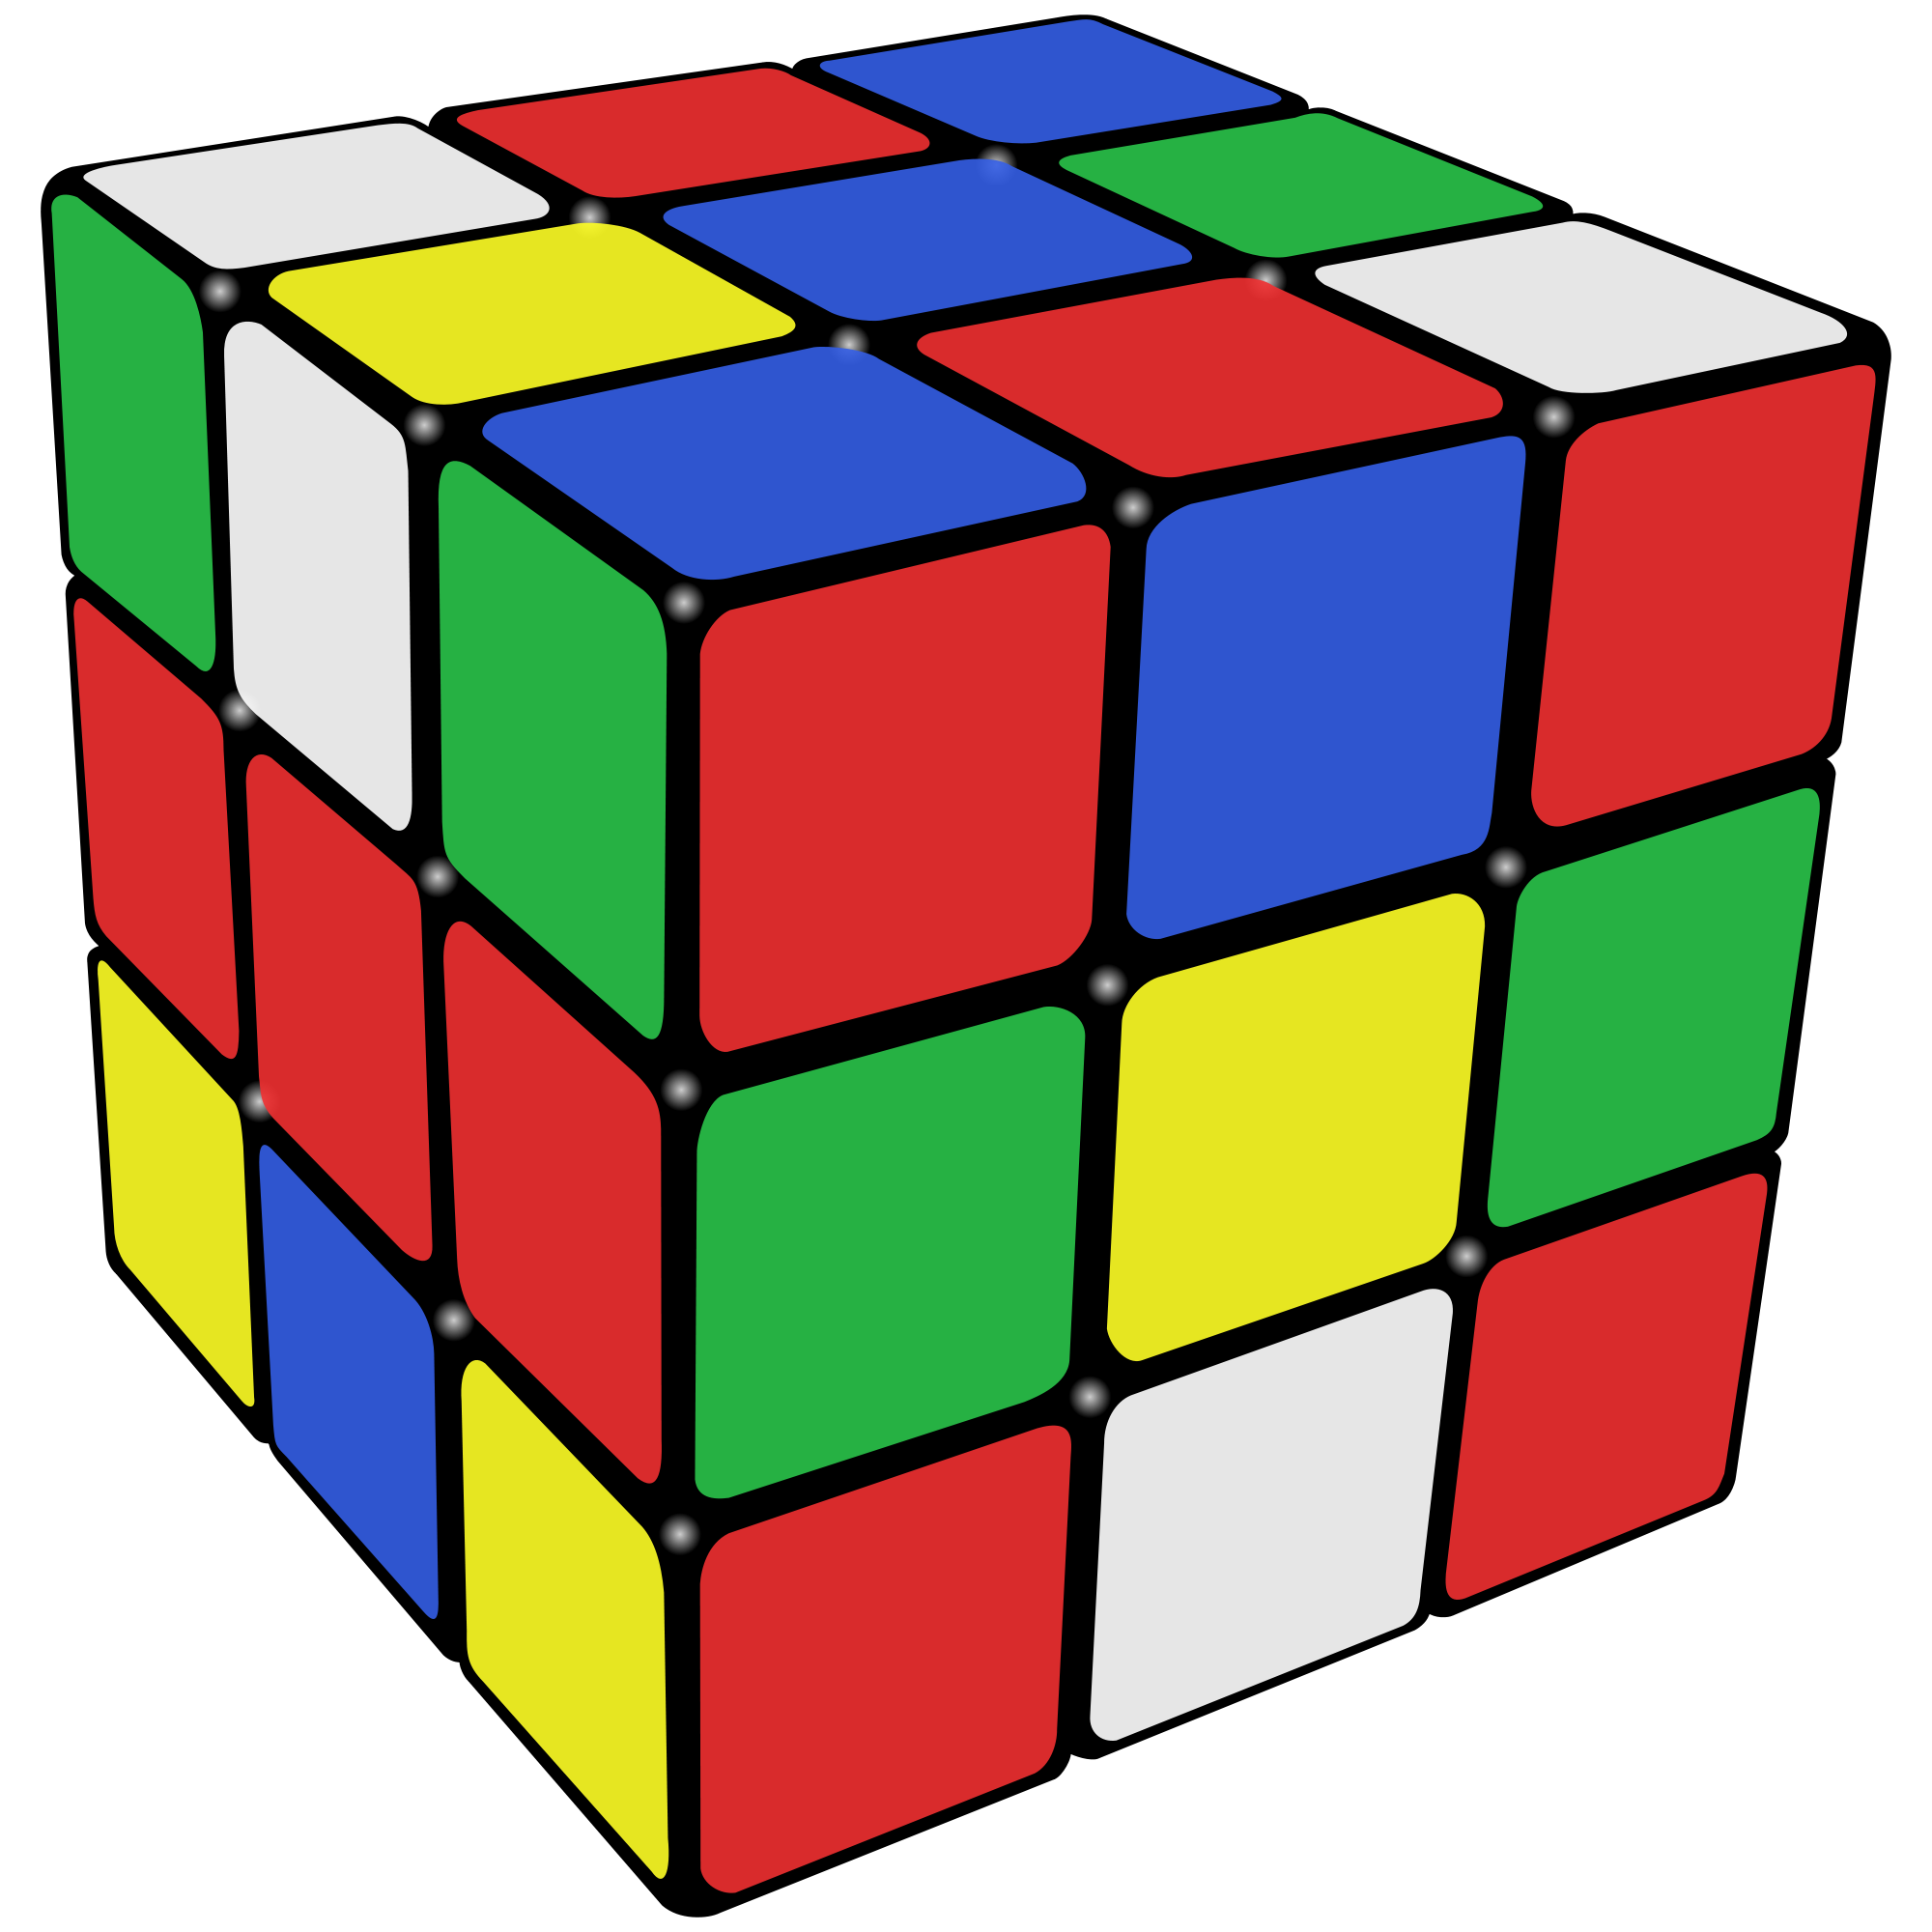 Rubik’s Cube PNG Image